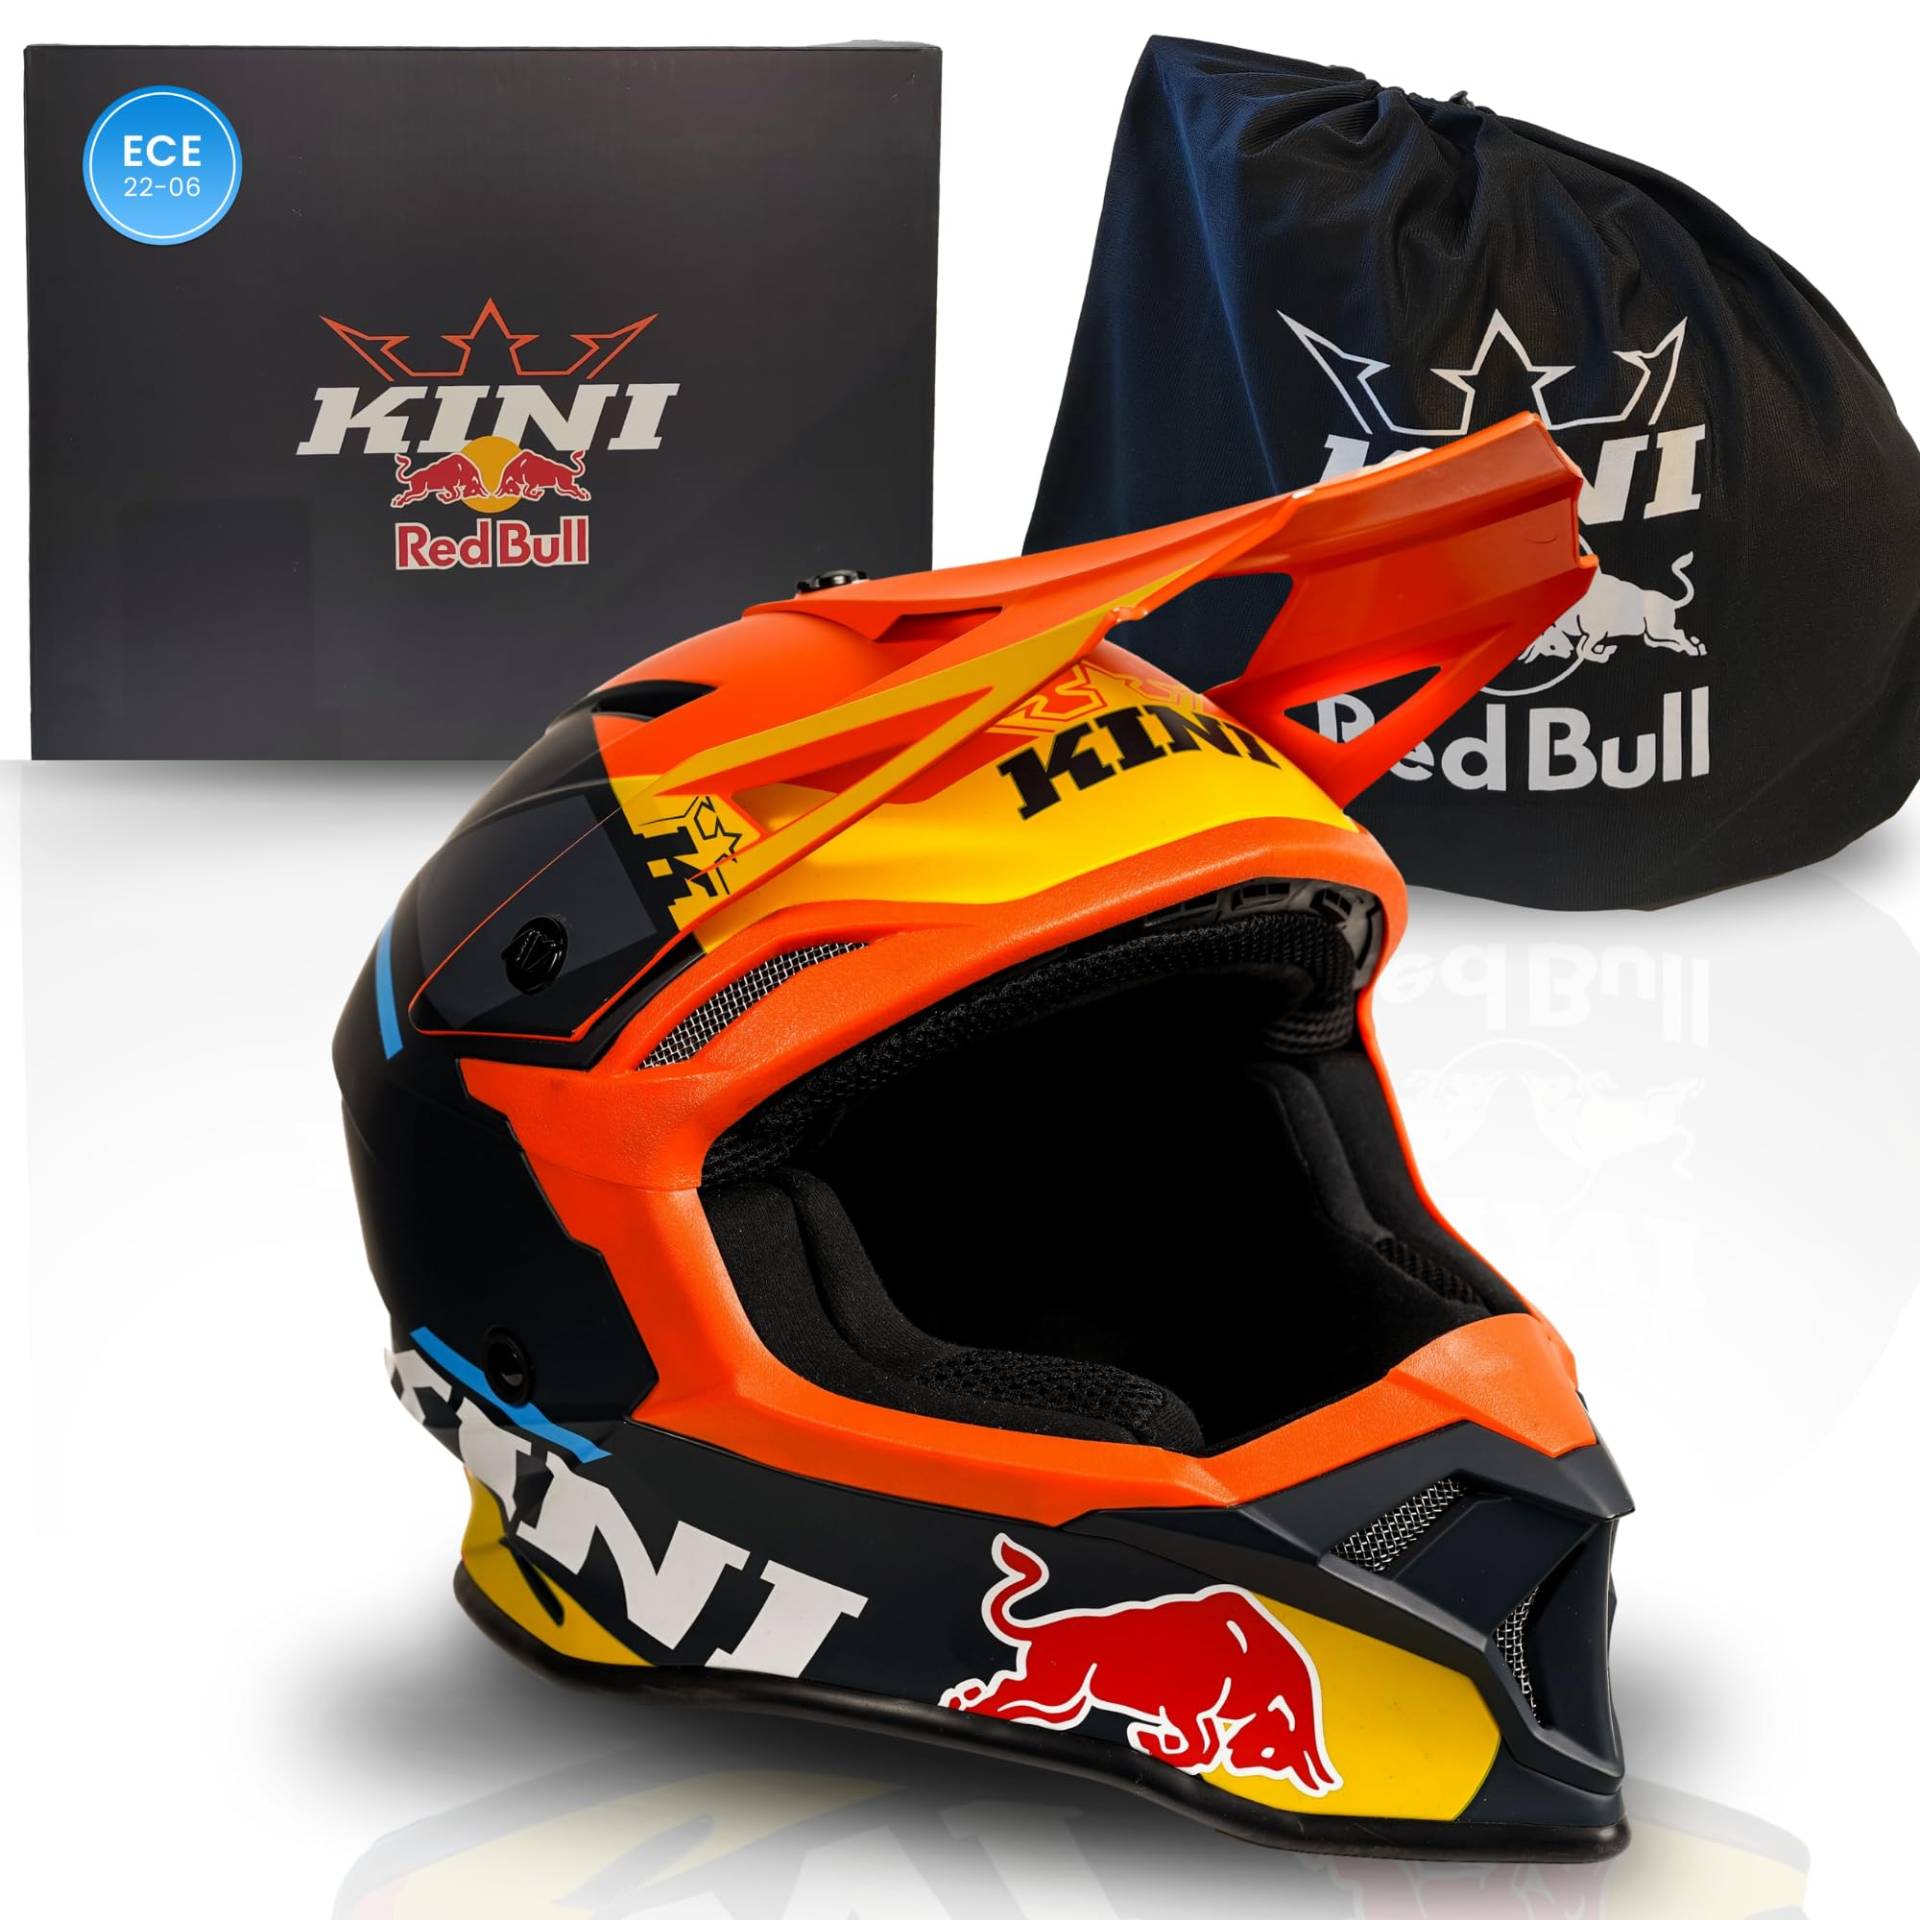 Kini Red Bull Motocross Helm Herren [Premium] Geprüfter Motorradhelm für Renneinsatz - Crosshelm auch als Enduro Helm Downhill Helm einsetzbar - Motocross Helm Brillenträger geeignet (L, Flash Helm) von Kini